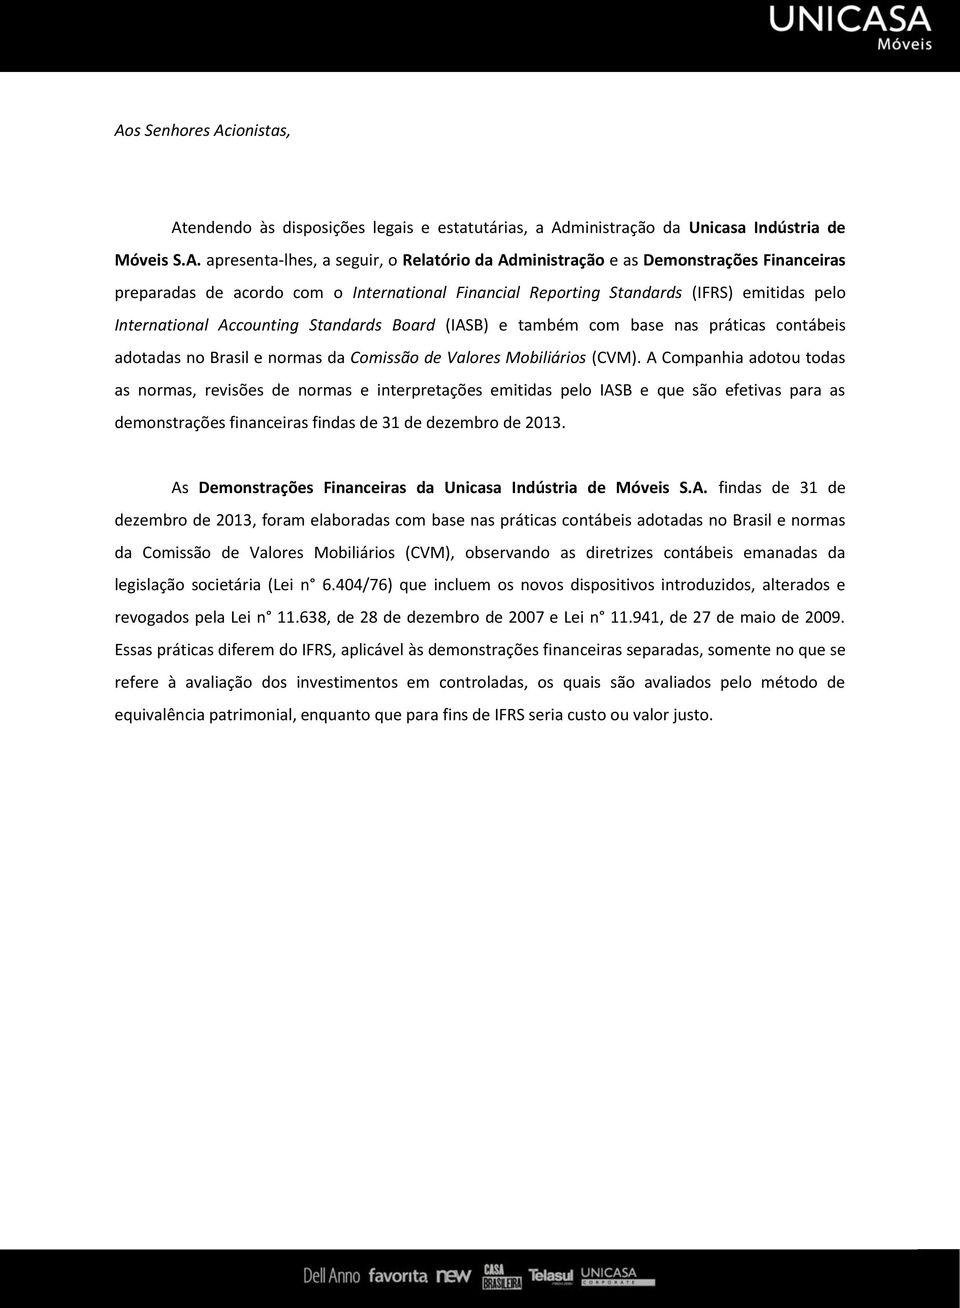 adotadas no Brasil e normas da Comissão de Valores Mobiliários (CVM).